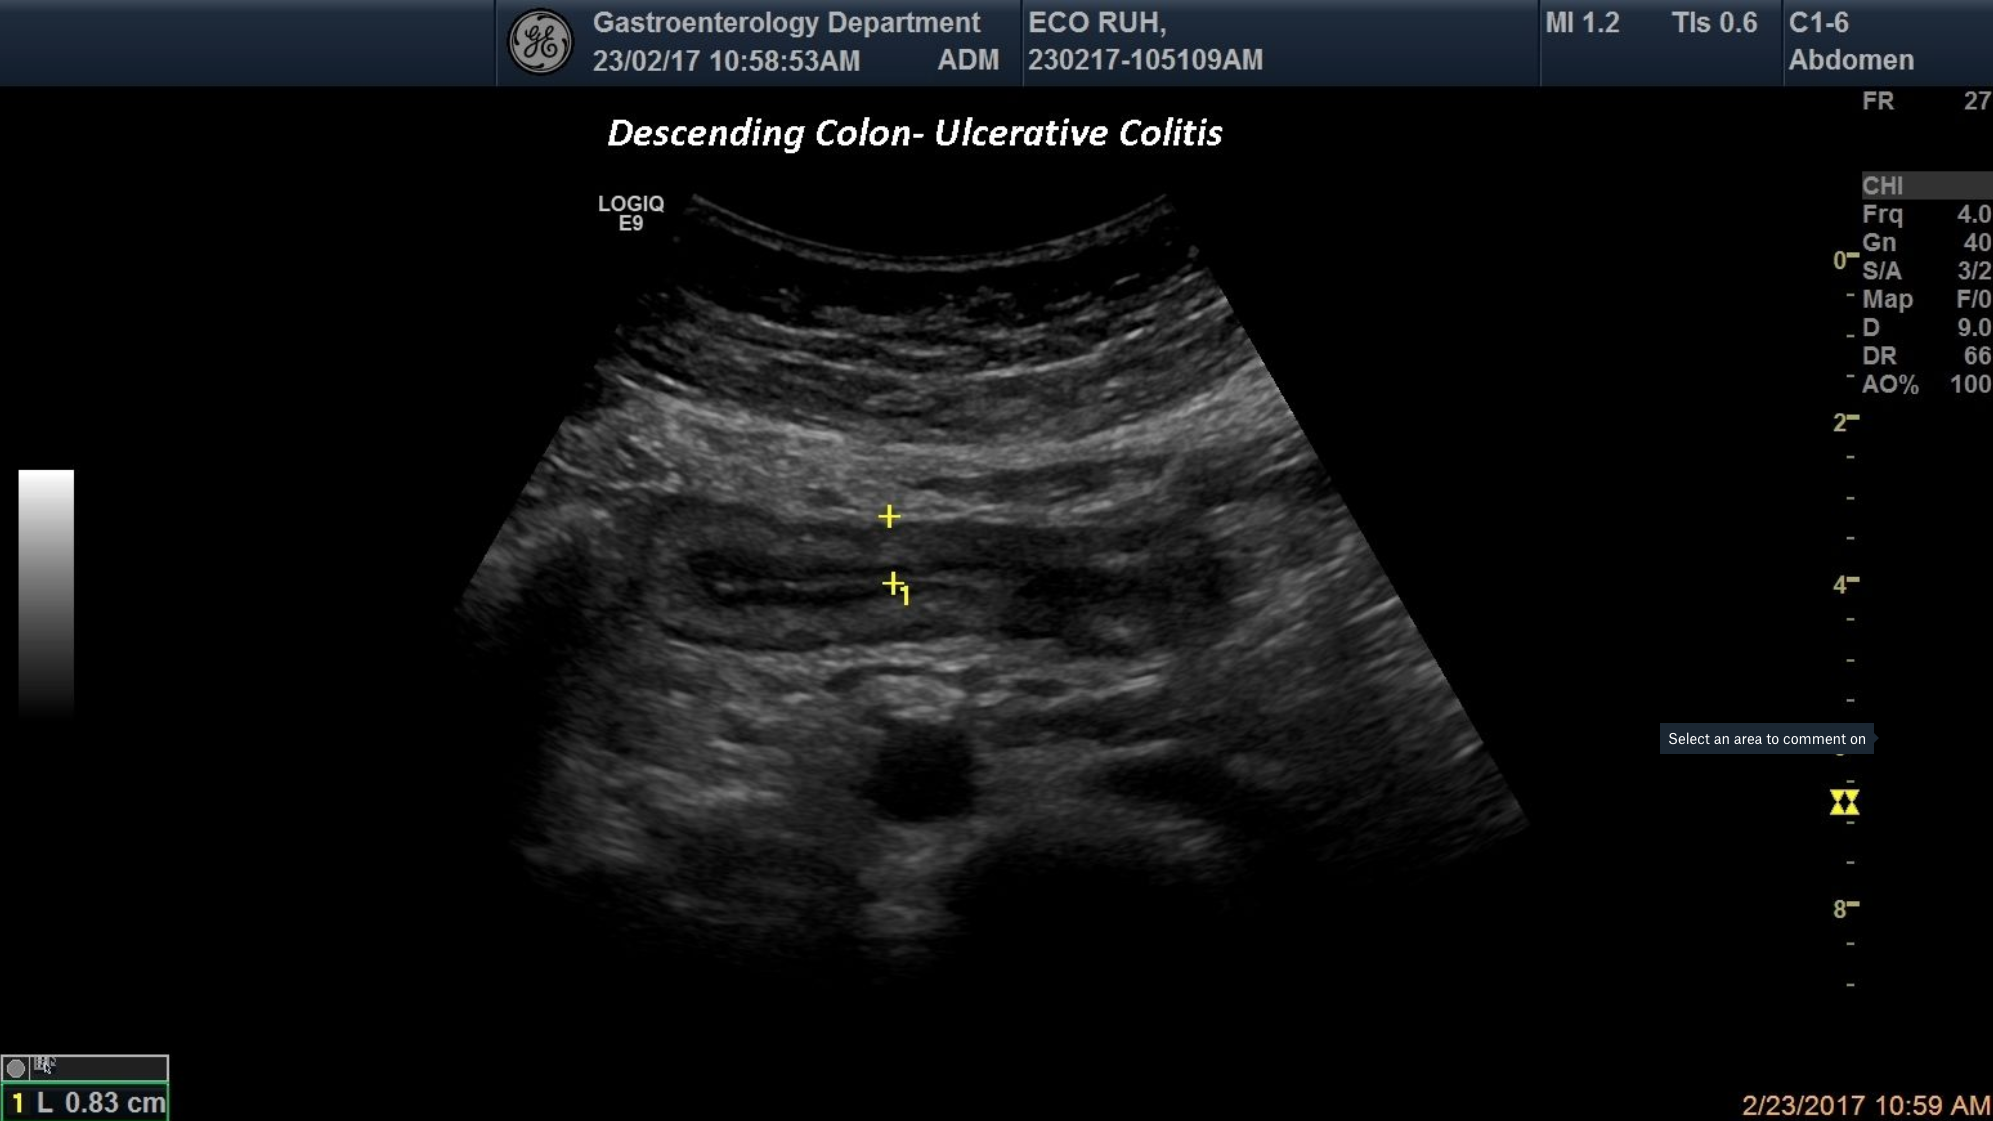 Ulcerative colitis-descending colon [1 image]